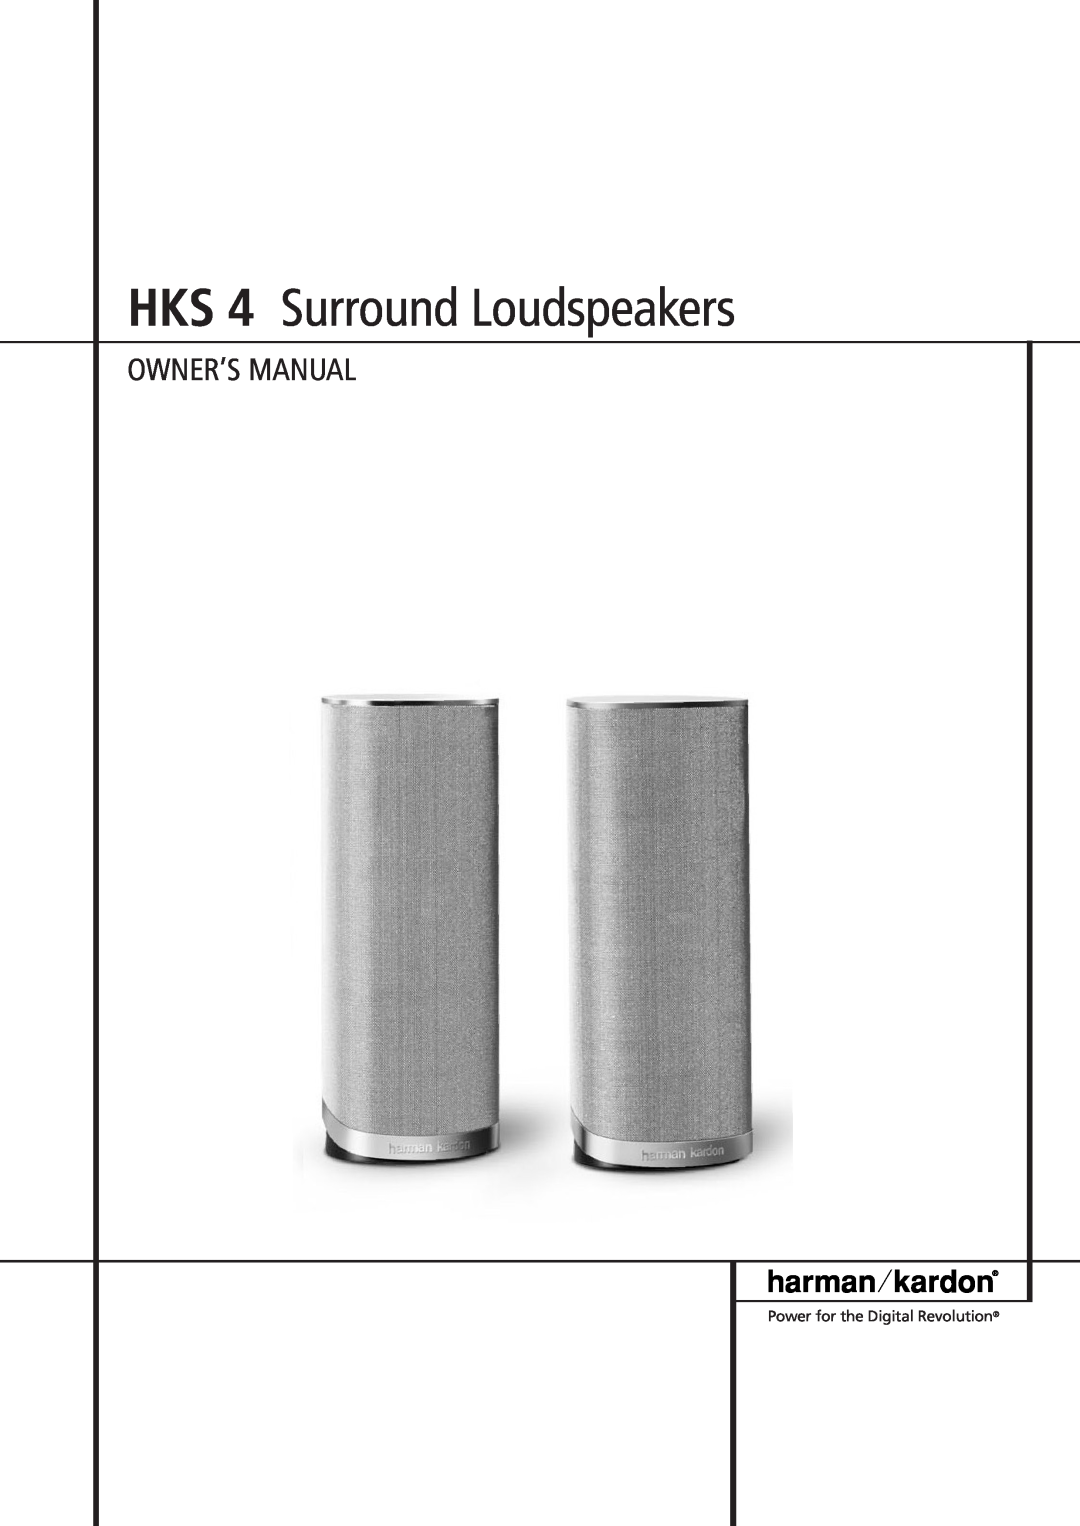 Harman-Kardon owner manual HKS 4 Surround Loudspeakers 